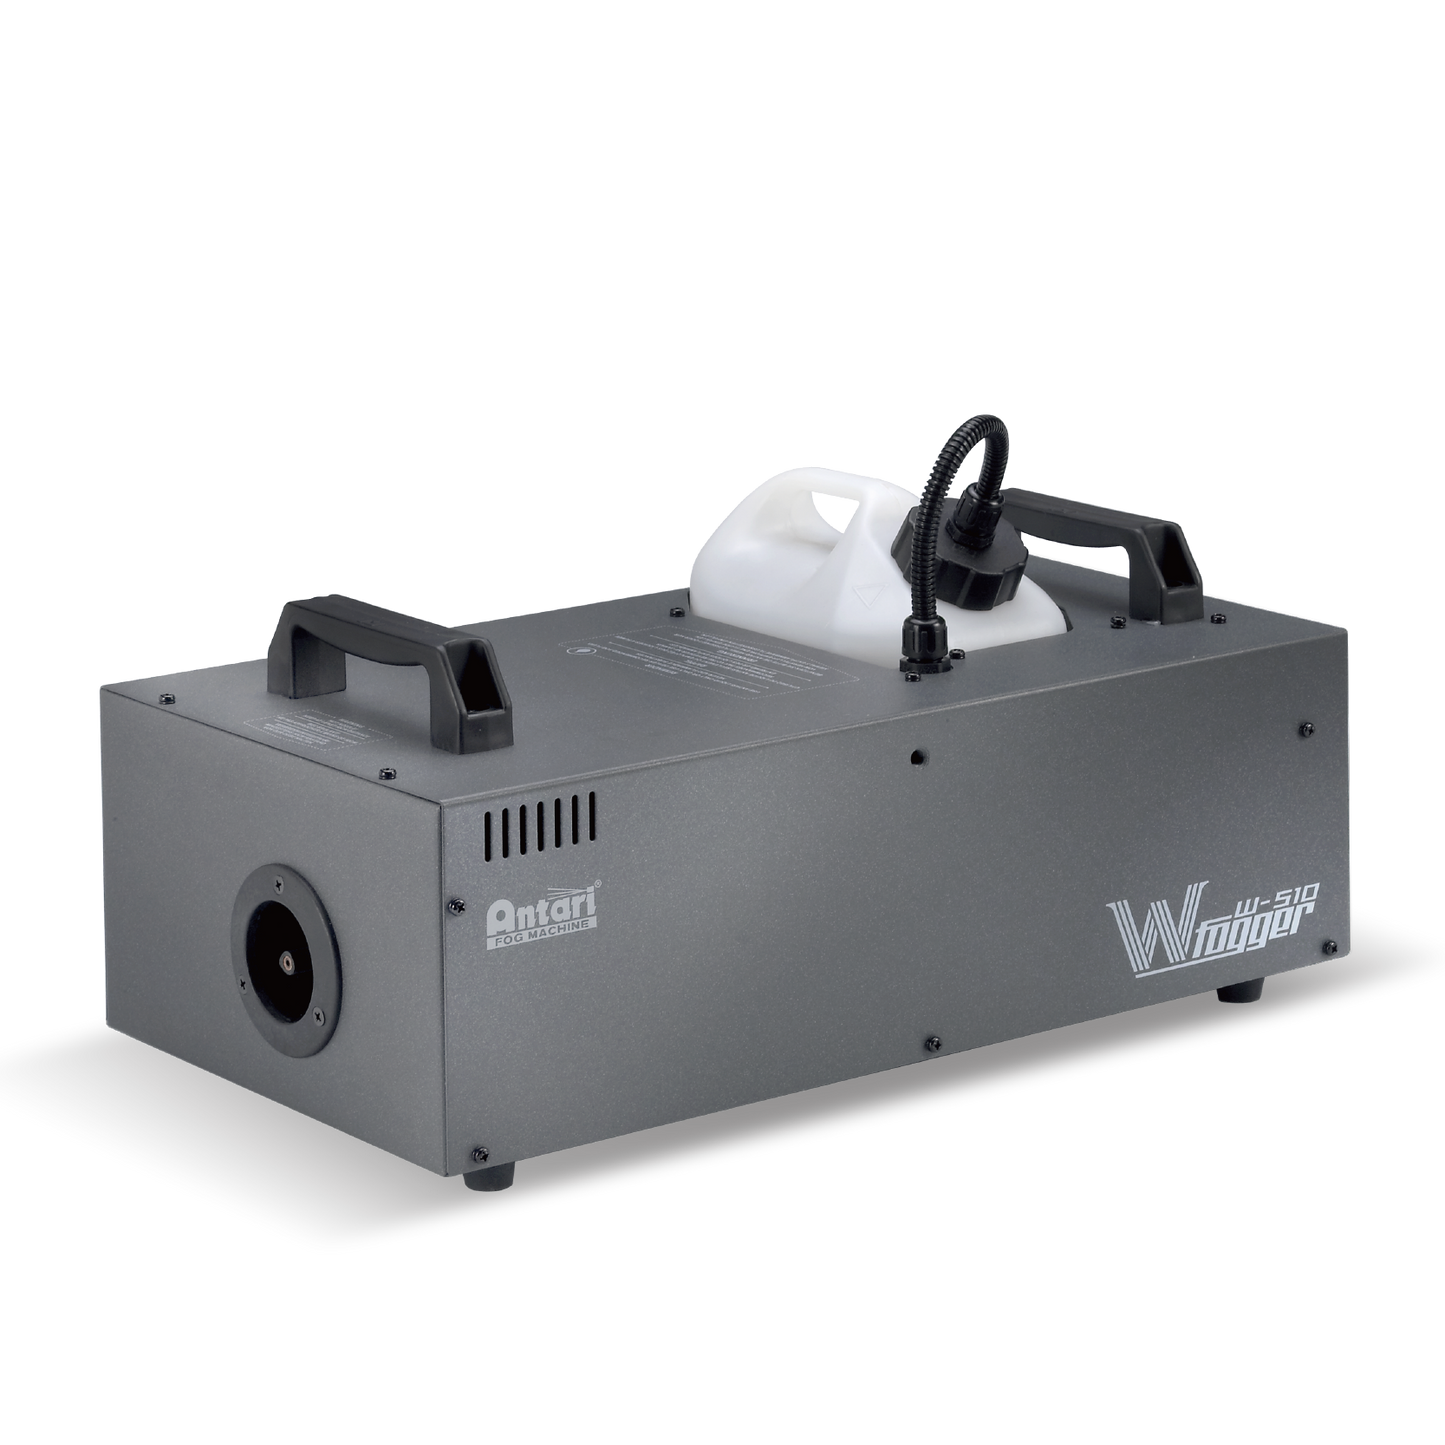 W-510 Wireless Fog Machine